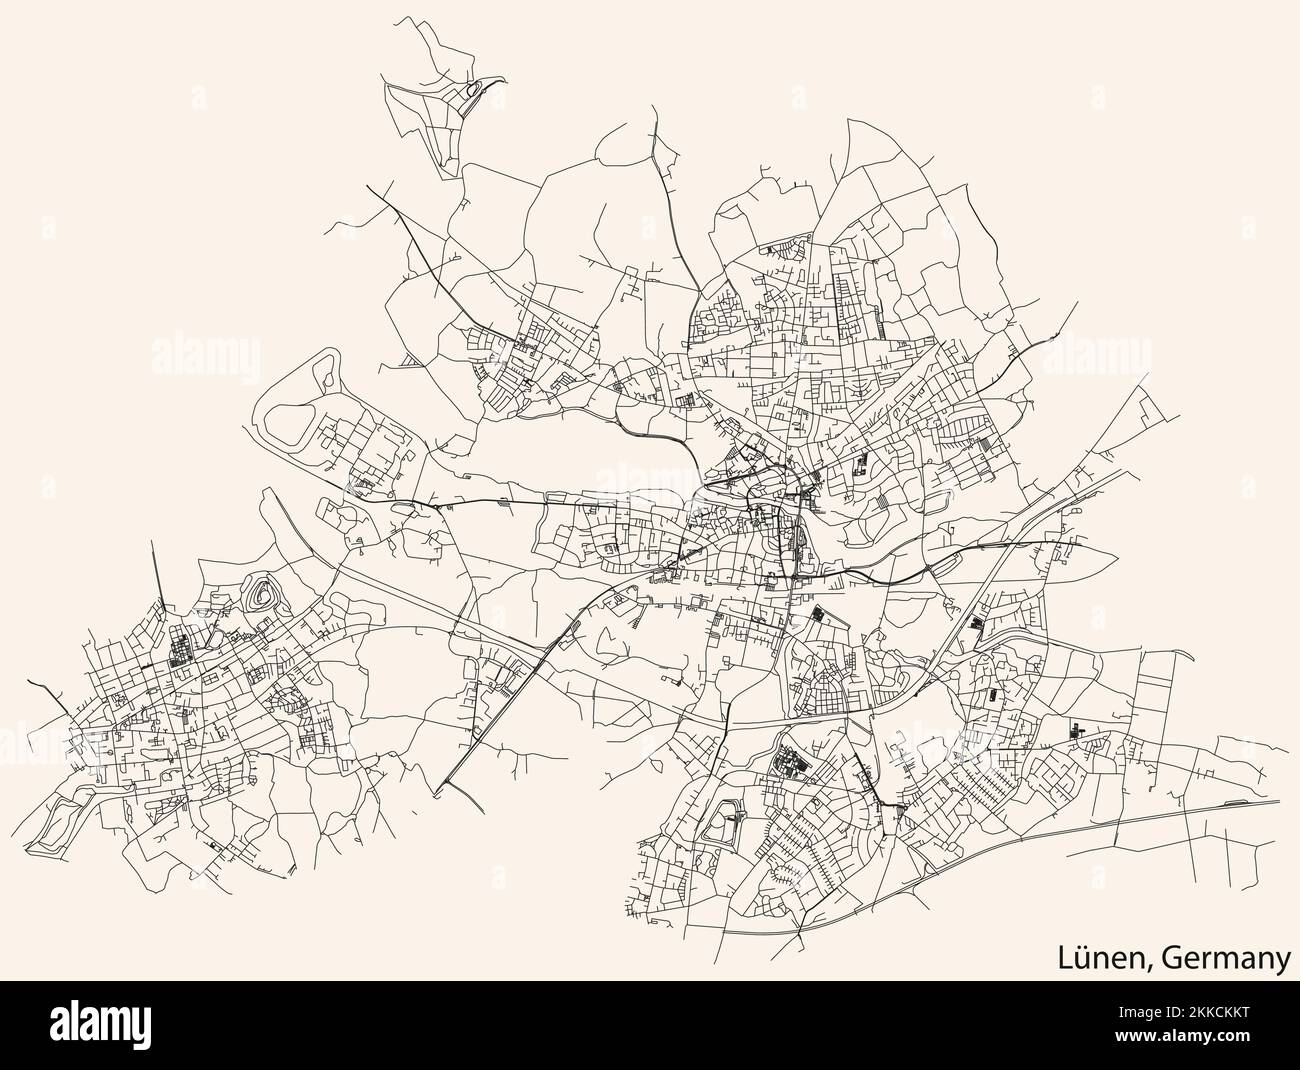 Navigation détaillée lignes noires rues urbaines carte de la capitale régionale allemande de LÜNEN, ALLEMAGNE sur fond beige vintage Illustration de Vecteur